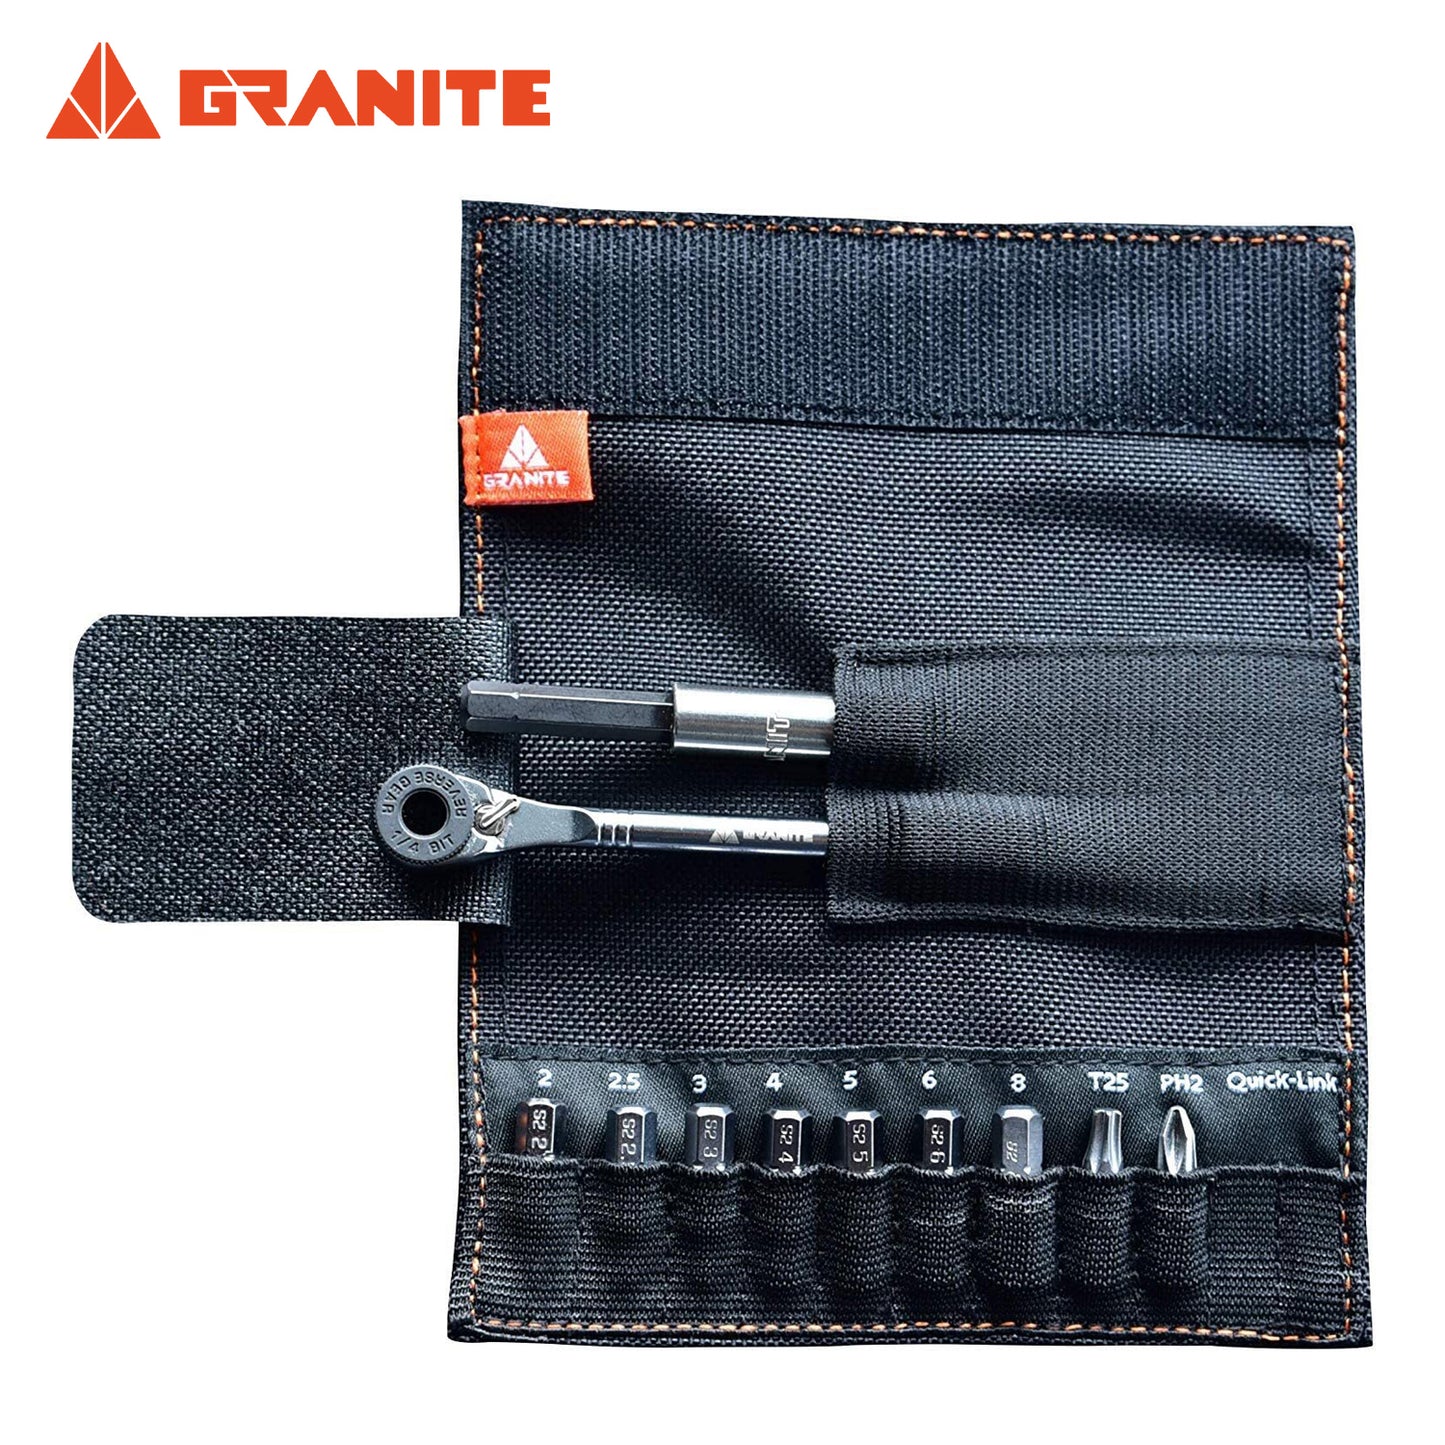 Granite Rocknroll Mini Ratchet Tool Kit - Green Camo